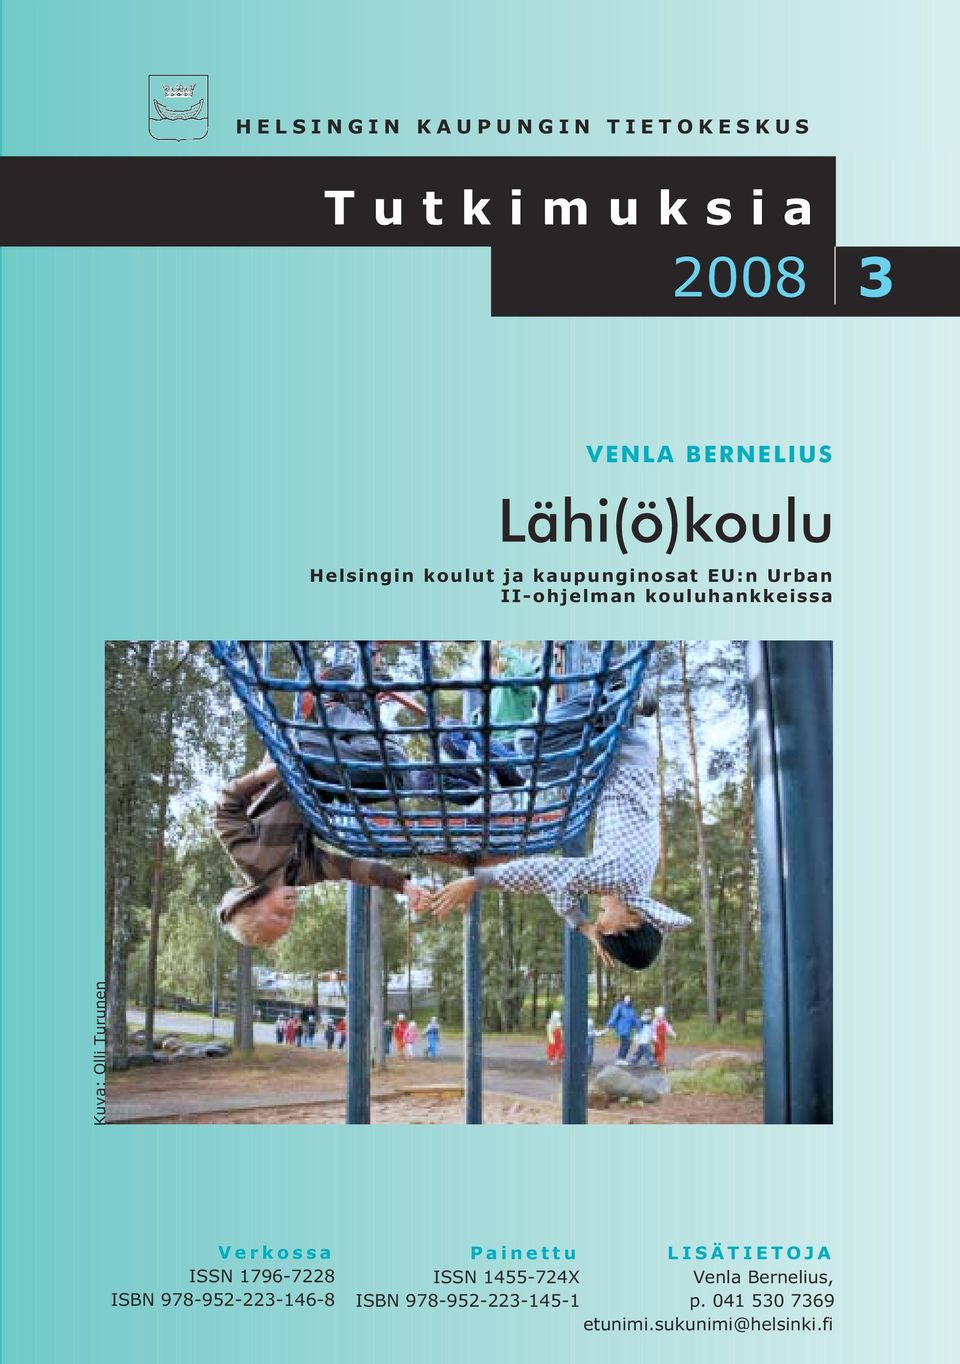 Turunen Verkossa ISSN 1796-7228 ISBN 978-952-223-146-8 Painettu LISÄTIETOJA ISSN